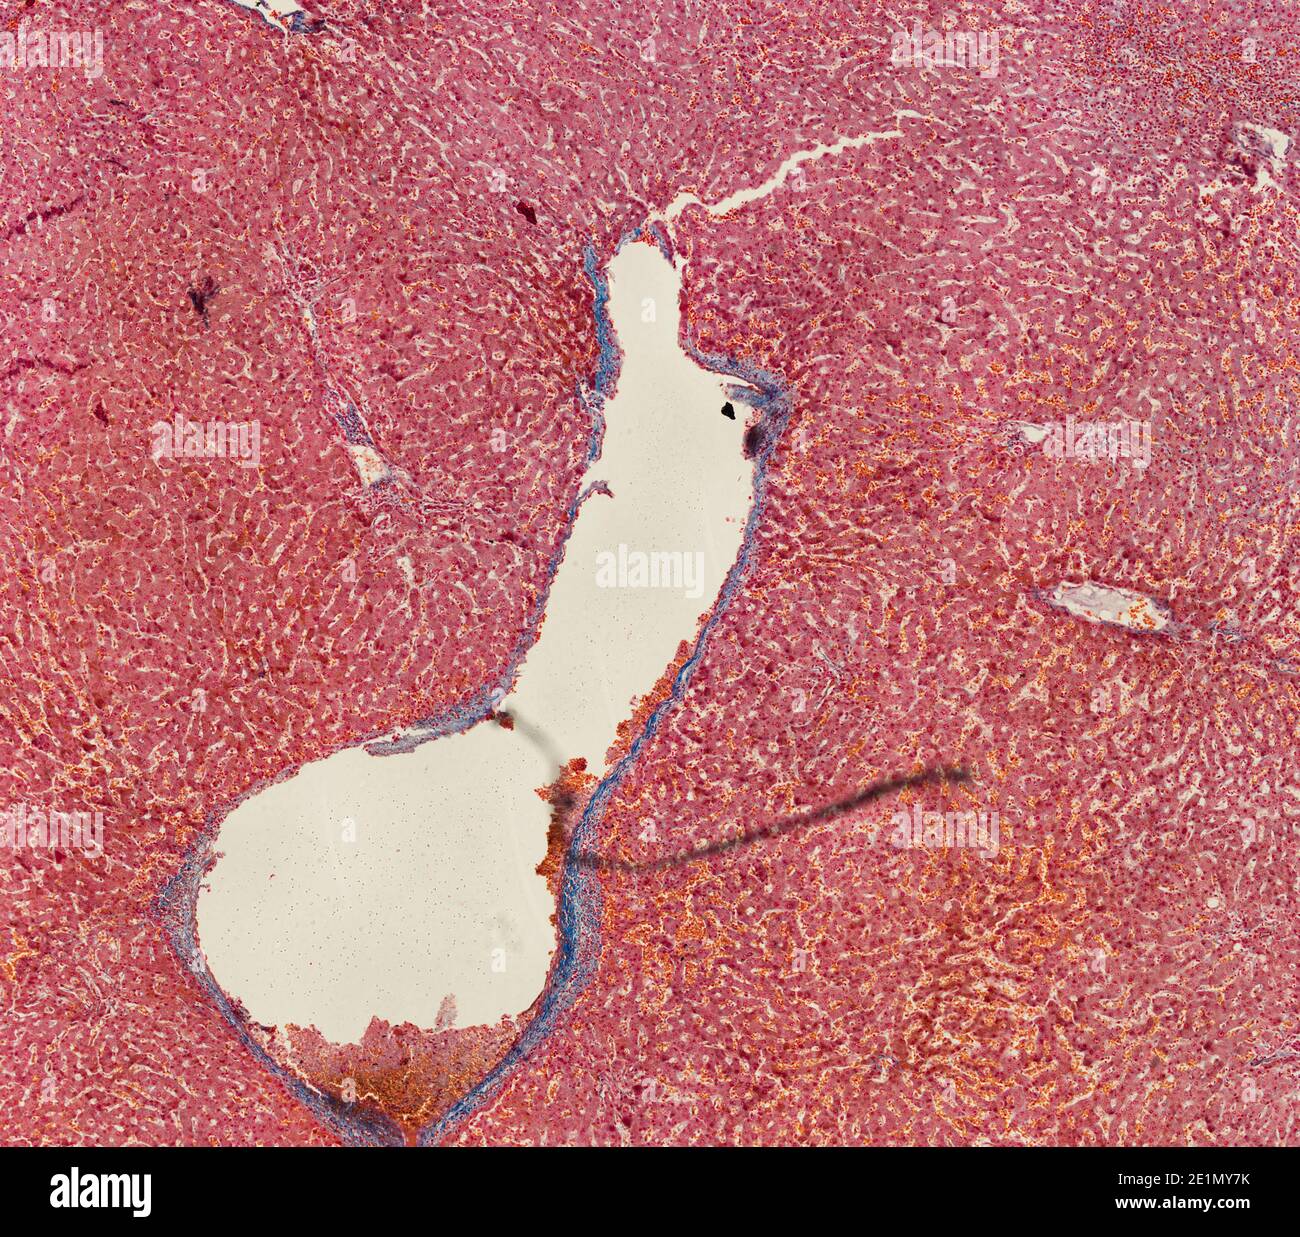 Querschnitt Schnitt von menschlichen Körperzellen unter einem wissenschaftlichen Mikroskop Stockfoto